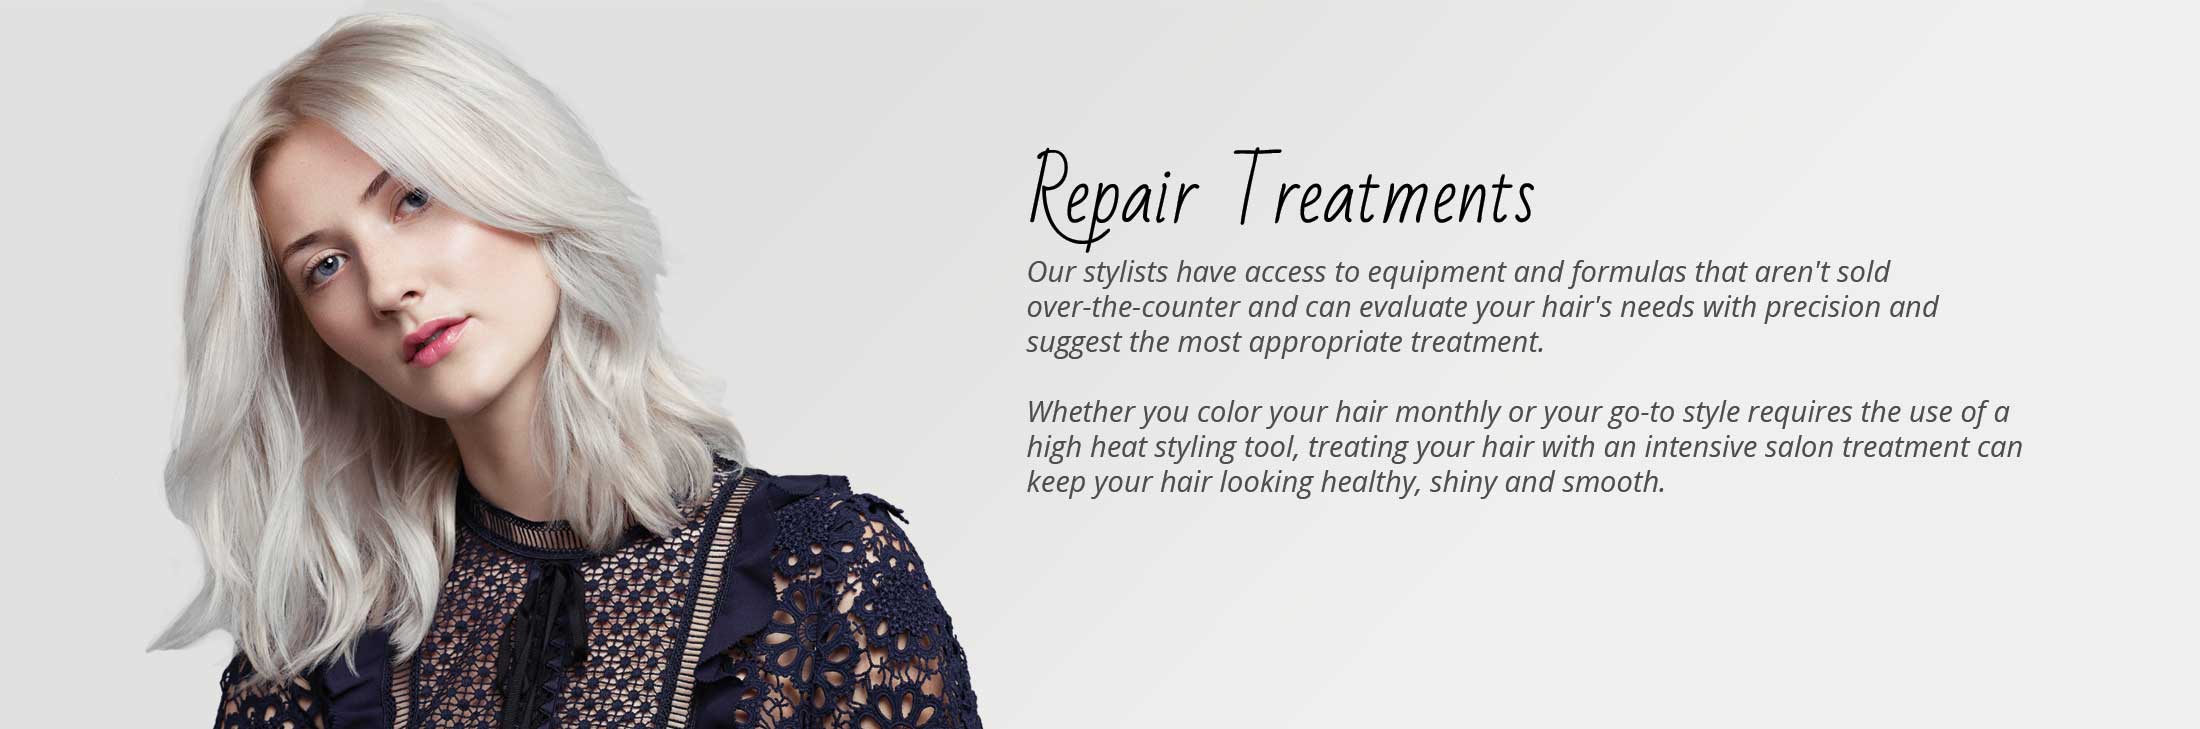 hair treatments | hair repair treatments